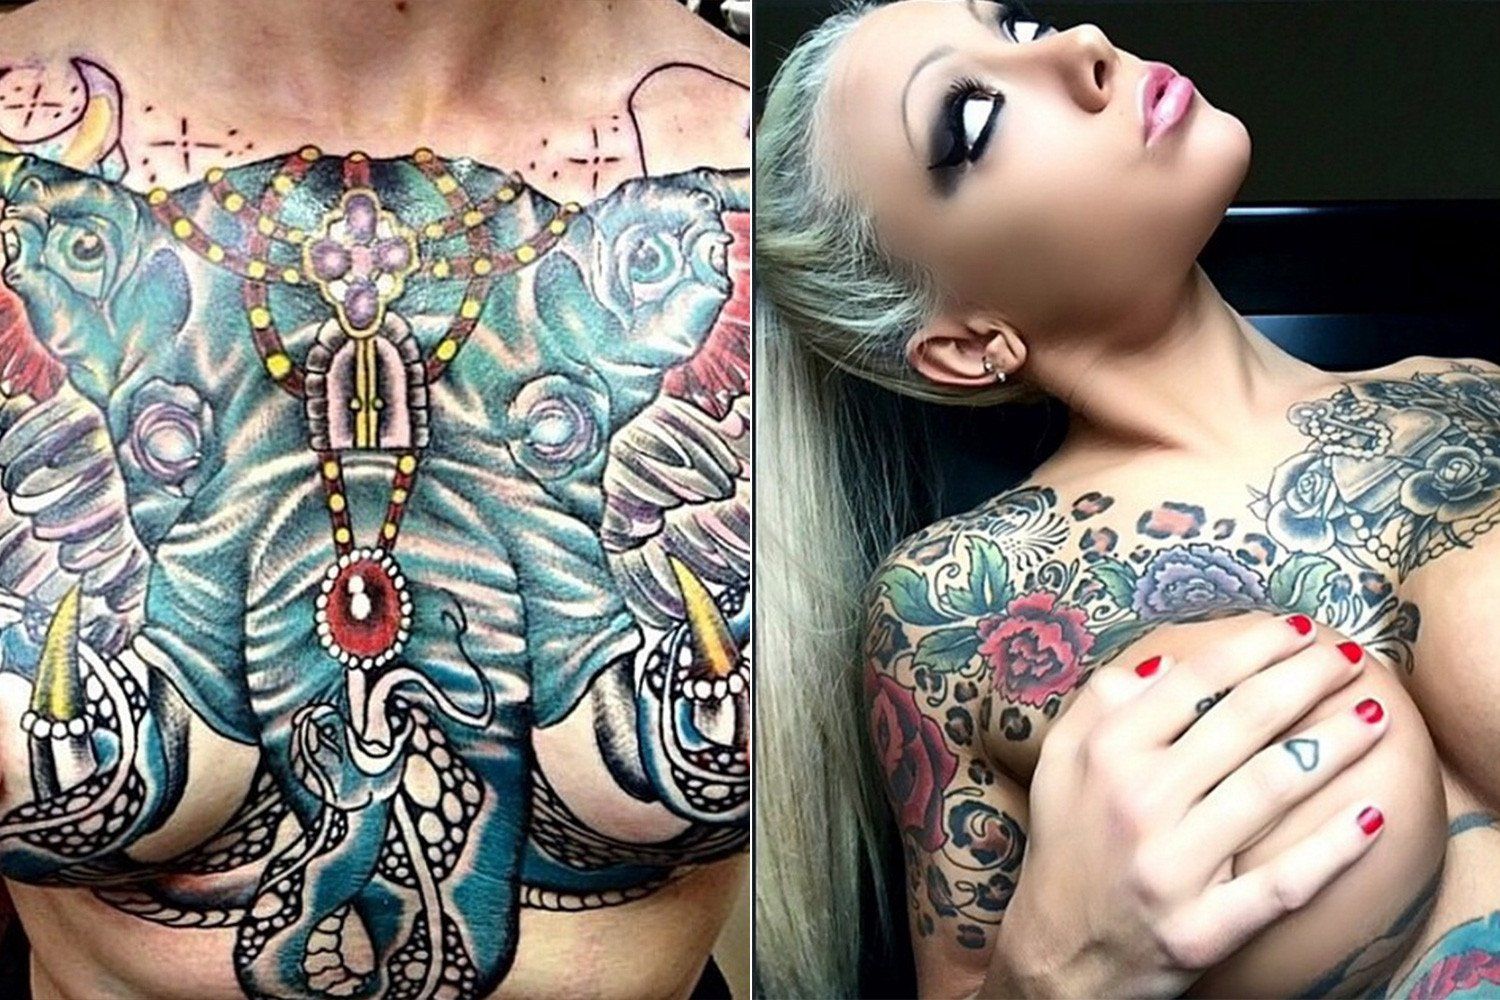 Woman boob tattoos